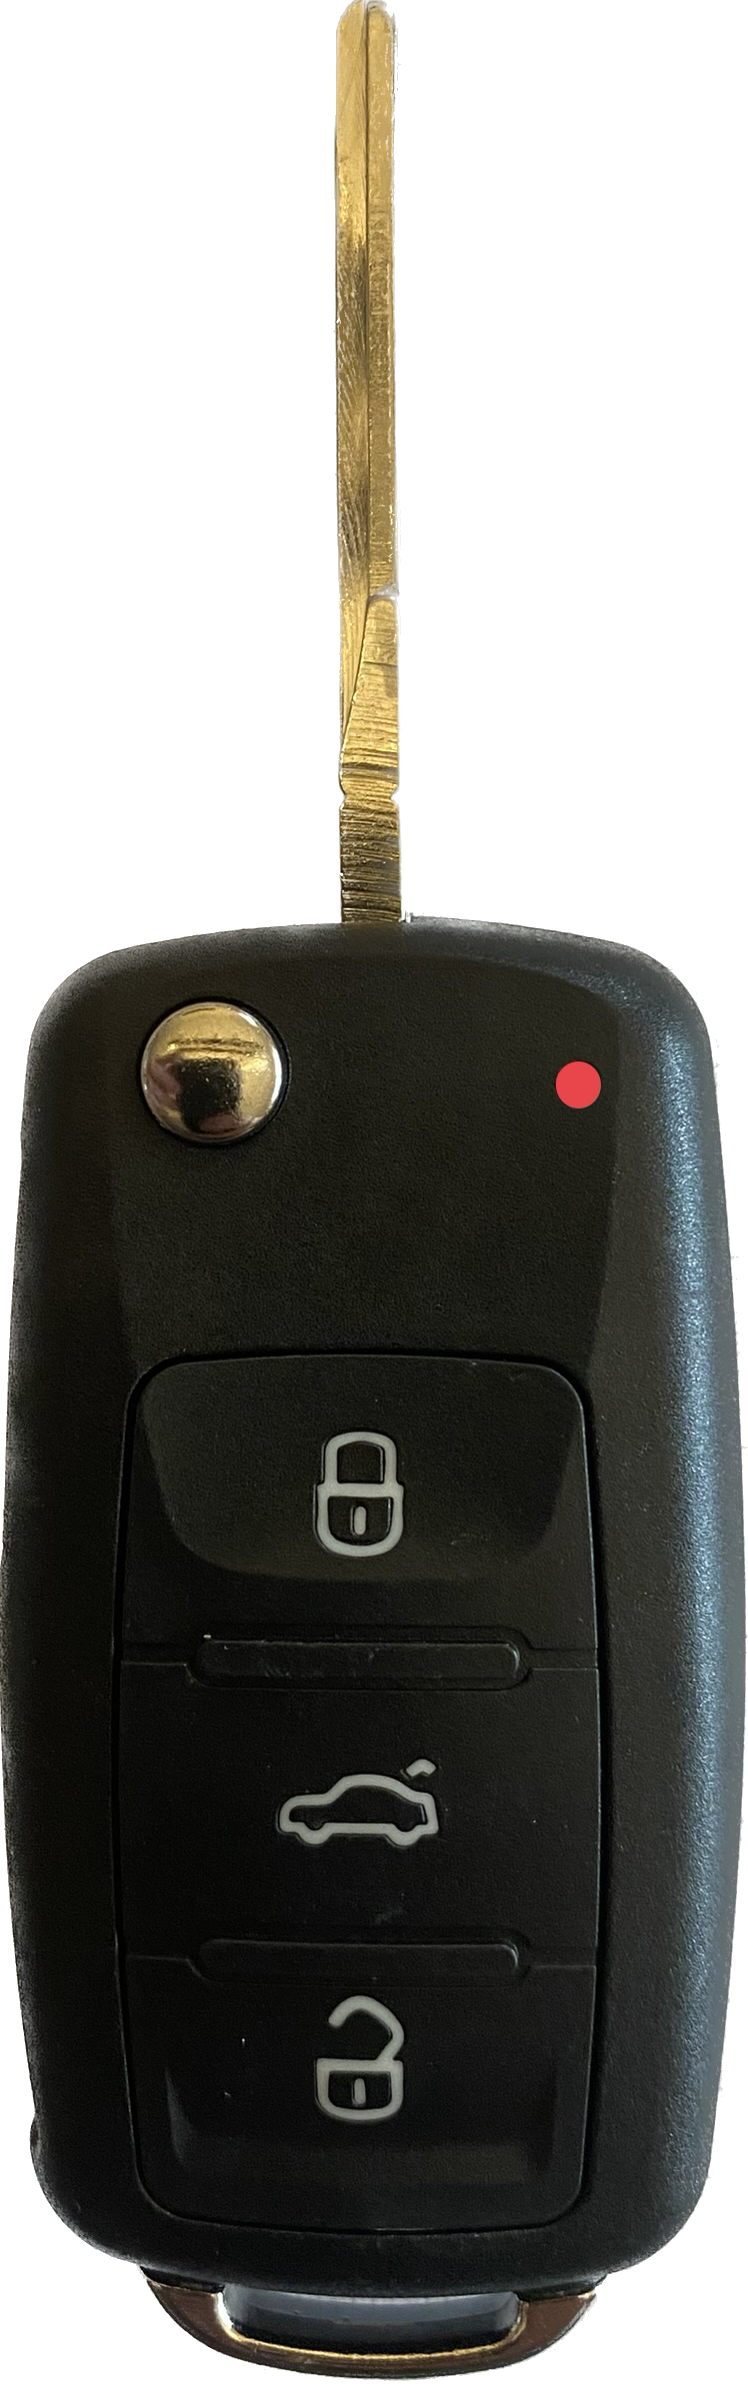 Autoschlüssel komplett mit Platine Funk Klappschlüssel kompatibel für VW 4 Tasten 5K0 837 202